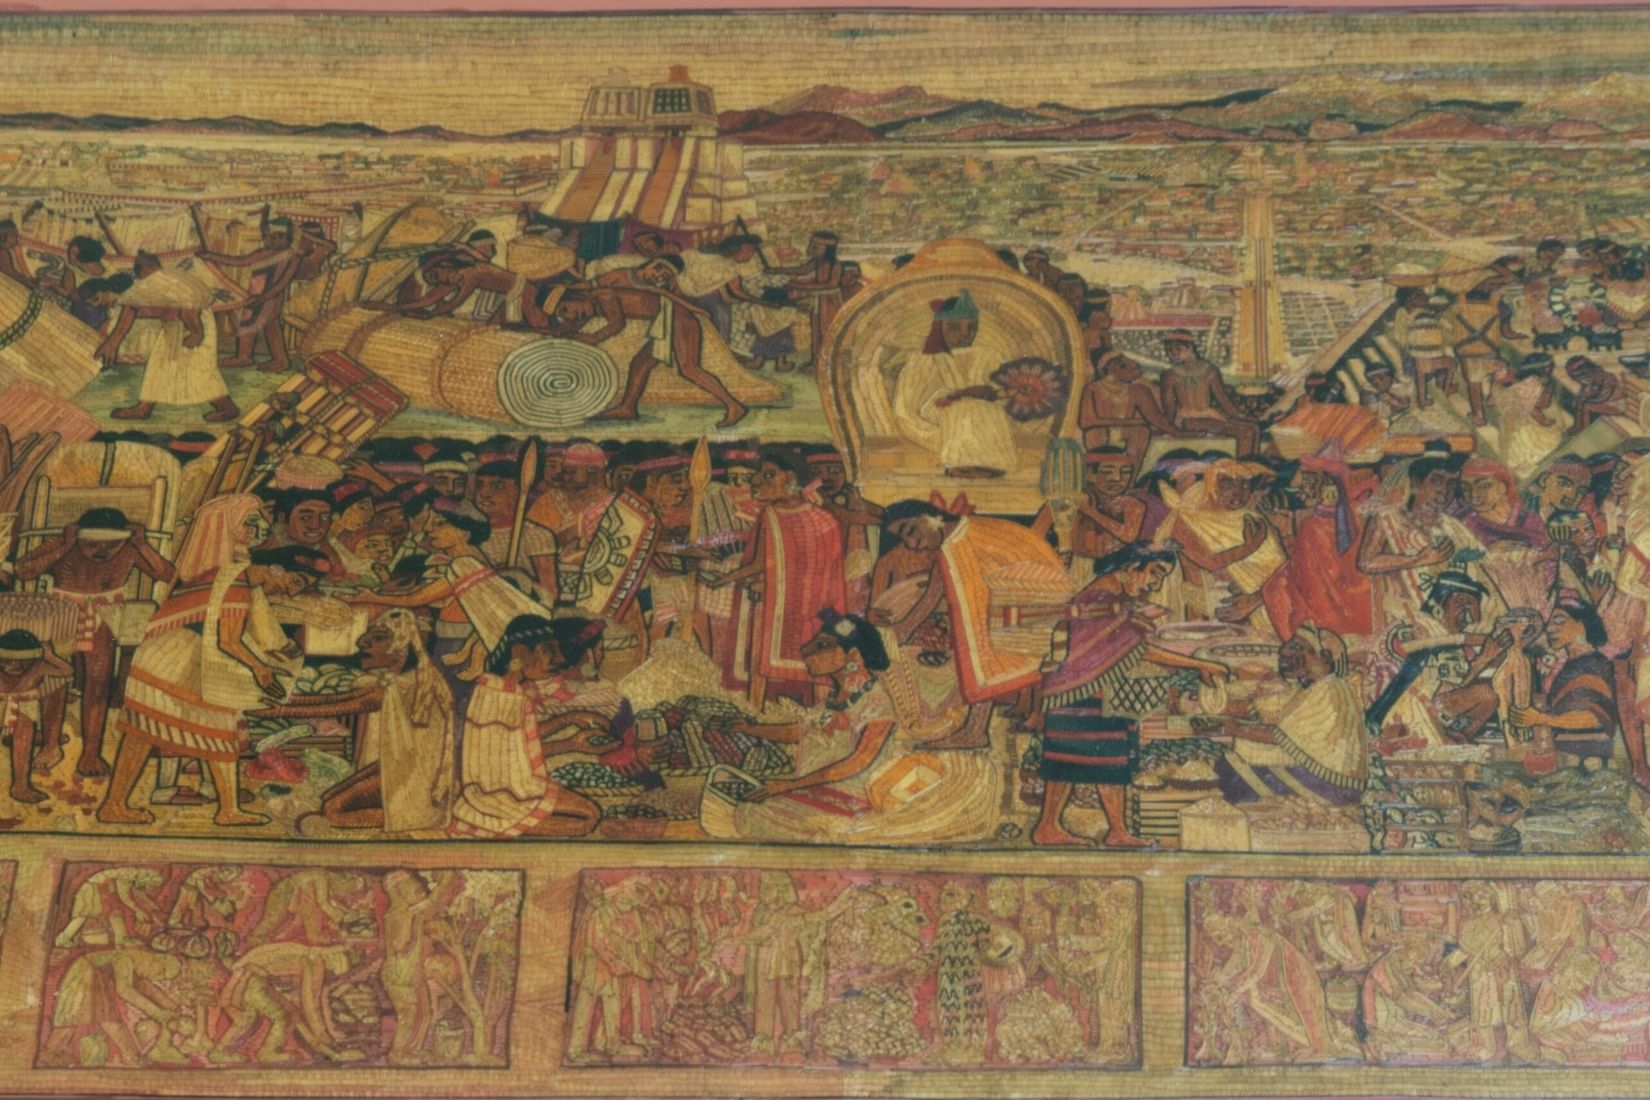 Tianguis de Tlatelolco. Popotillo pintado con anilinas, sobre papel. Artesano Luis Guillermo Olay. Tlalpujahua, Mich. 1999. Col. Part. (Foto: EKV).